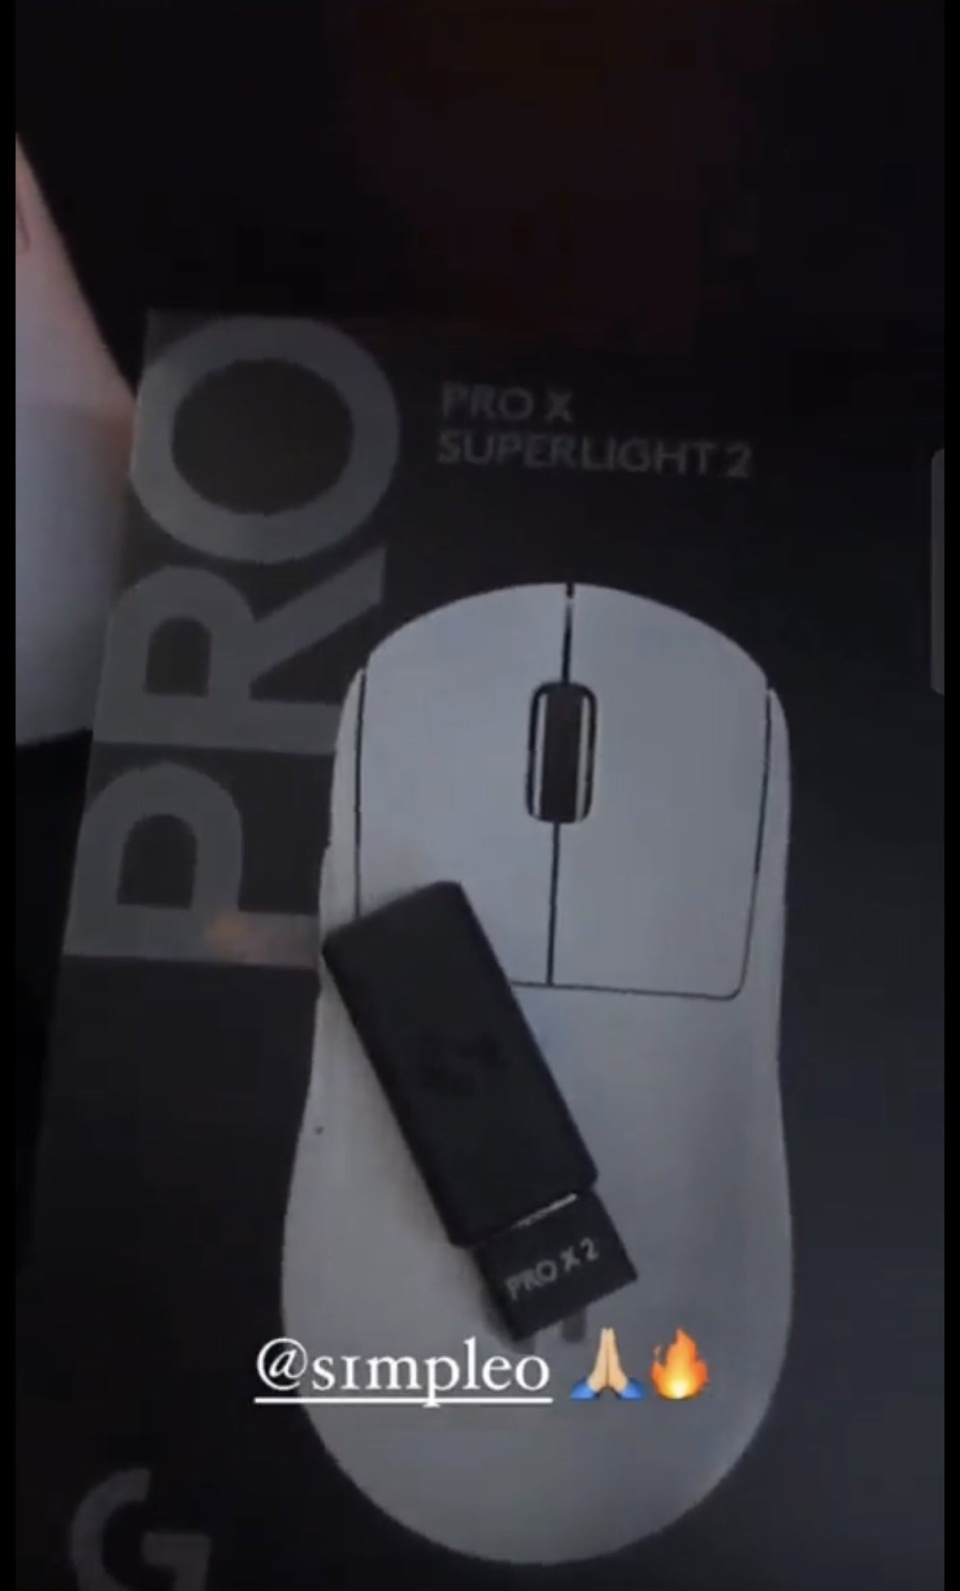 罗技G Pro X Superlight 2 无线鼠标照片曝光-腾讯新闻